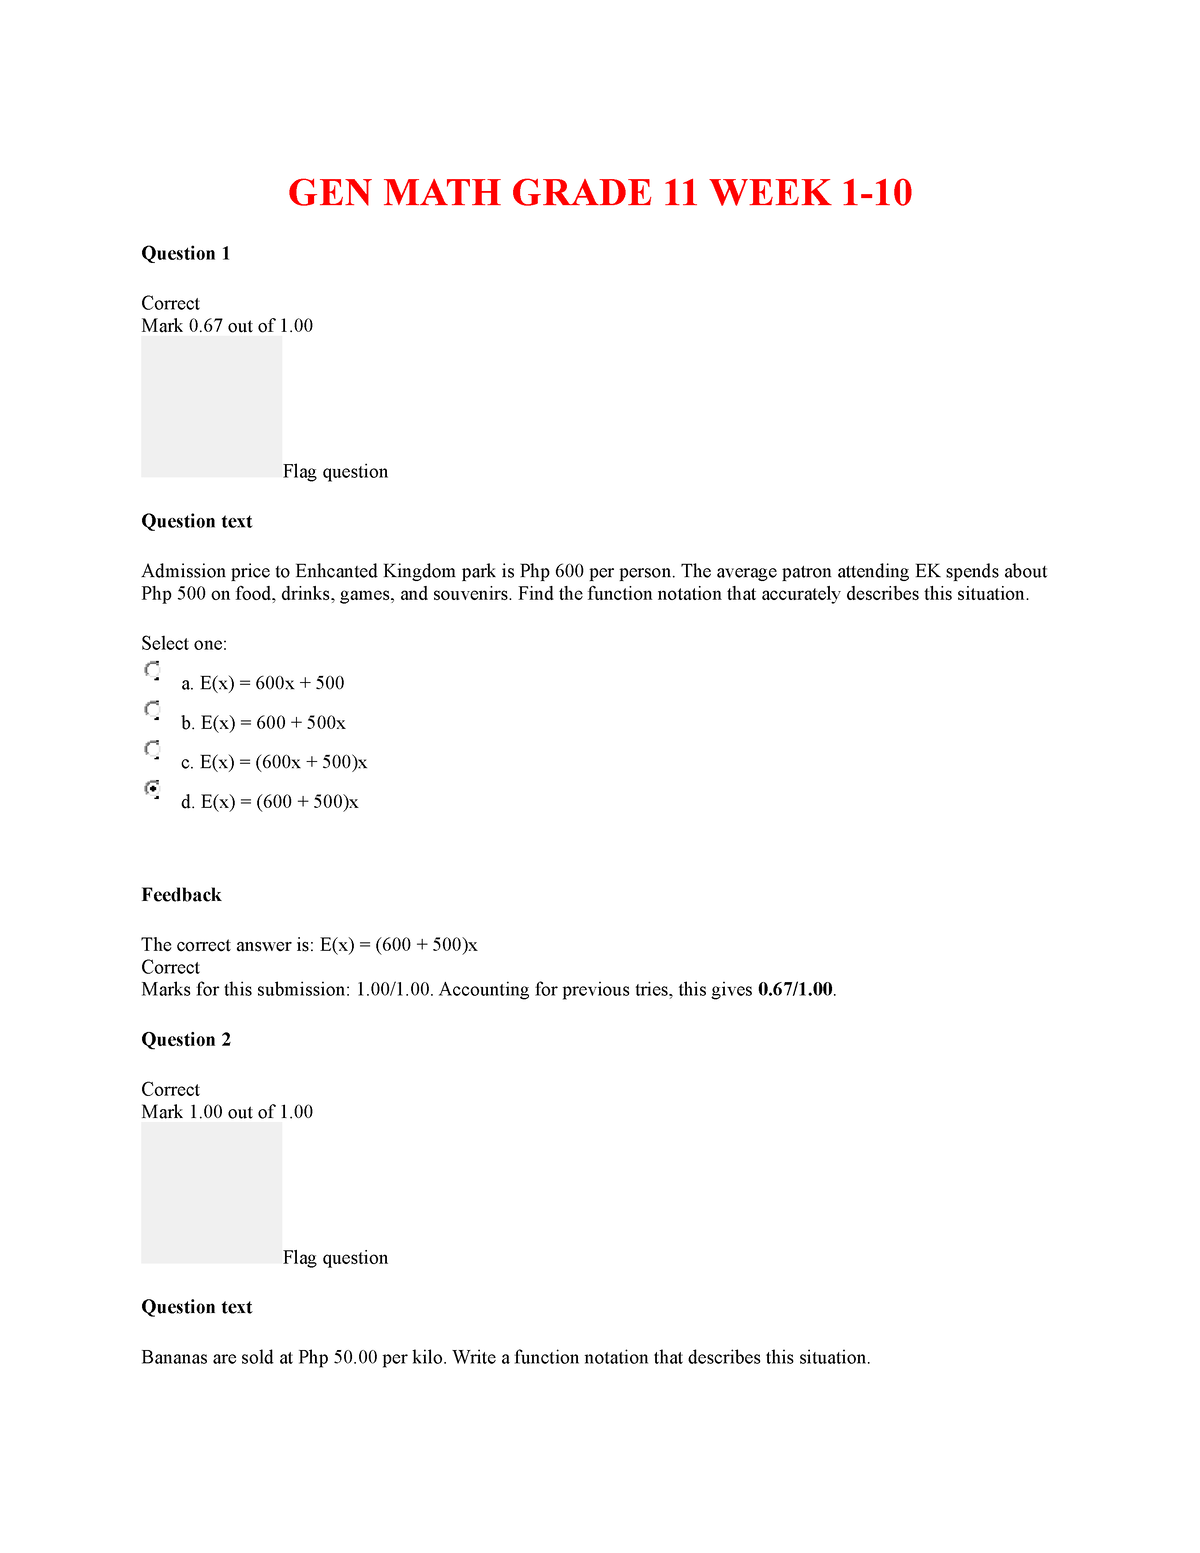 gen-math-week-1-10-lecture-notes-1-10-gen-math-grade-11-week-1-question-1-correct-mark-0